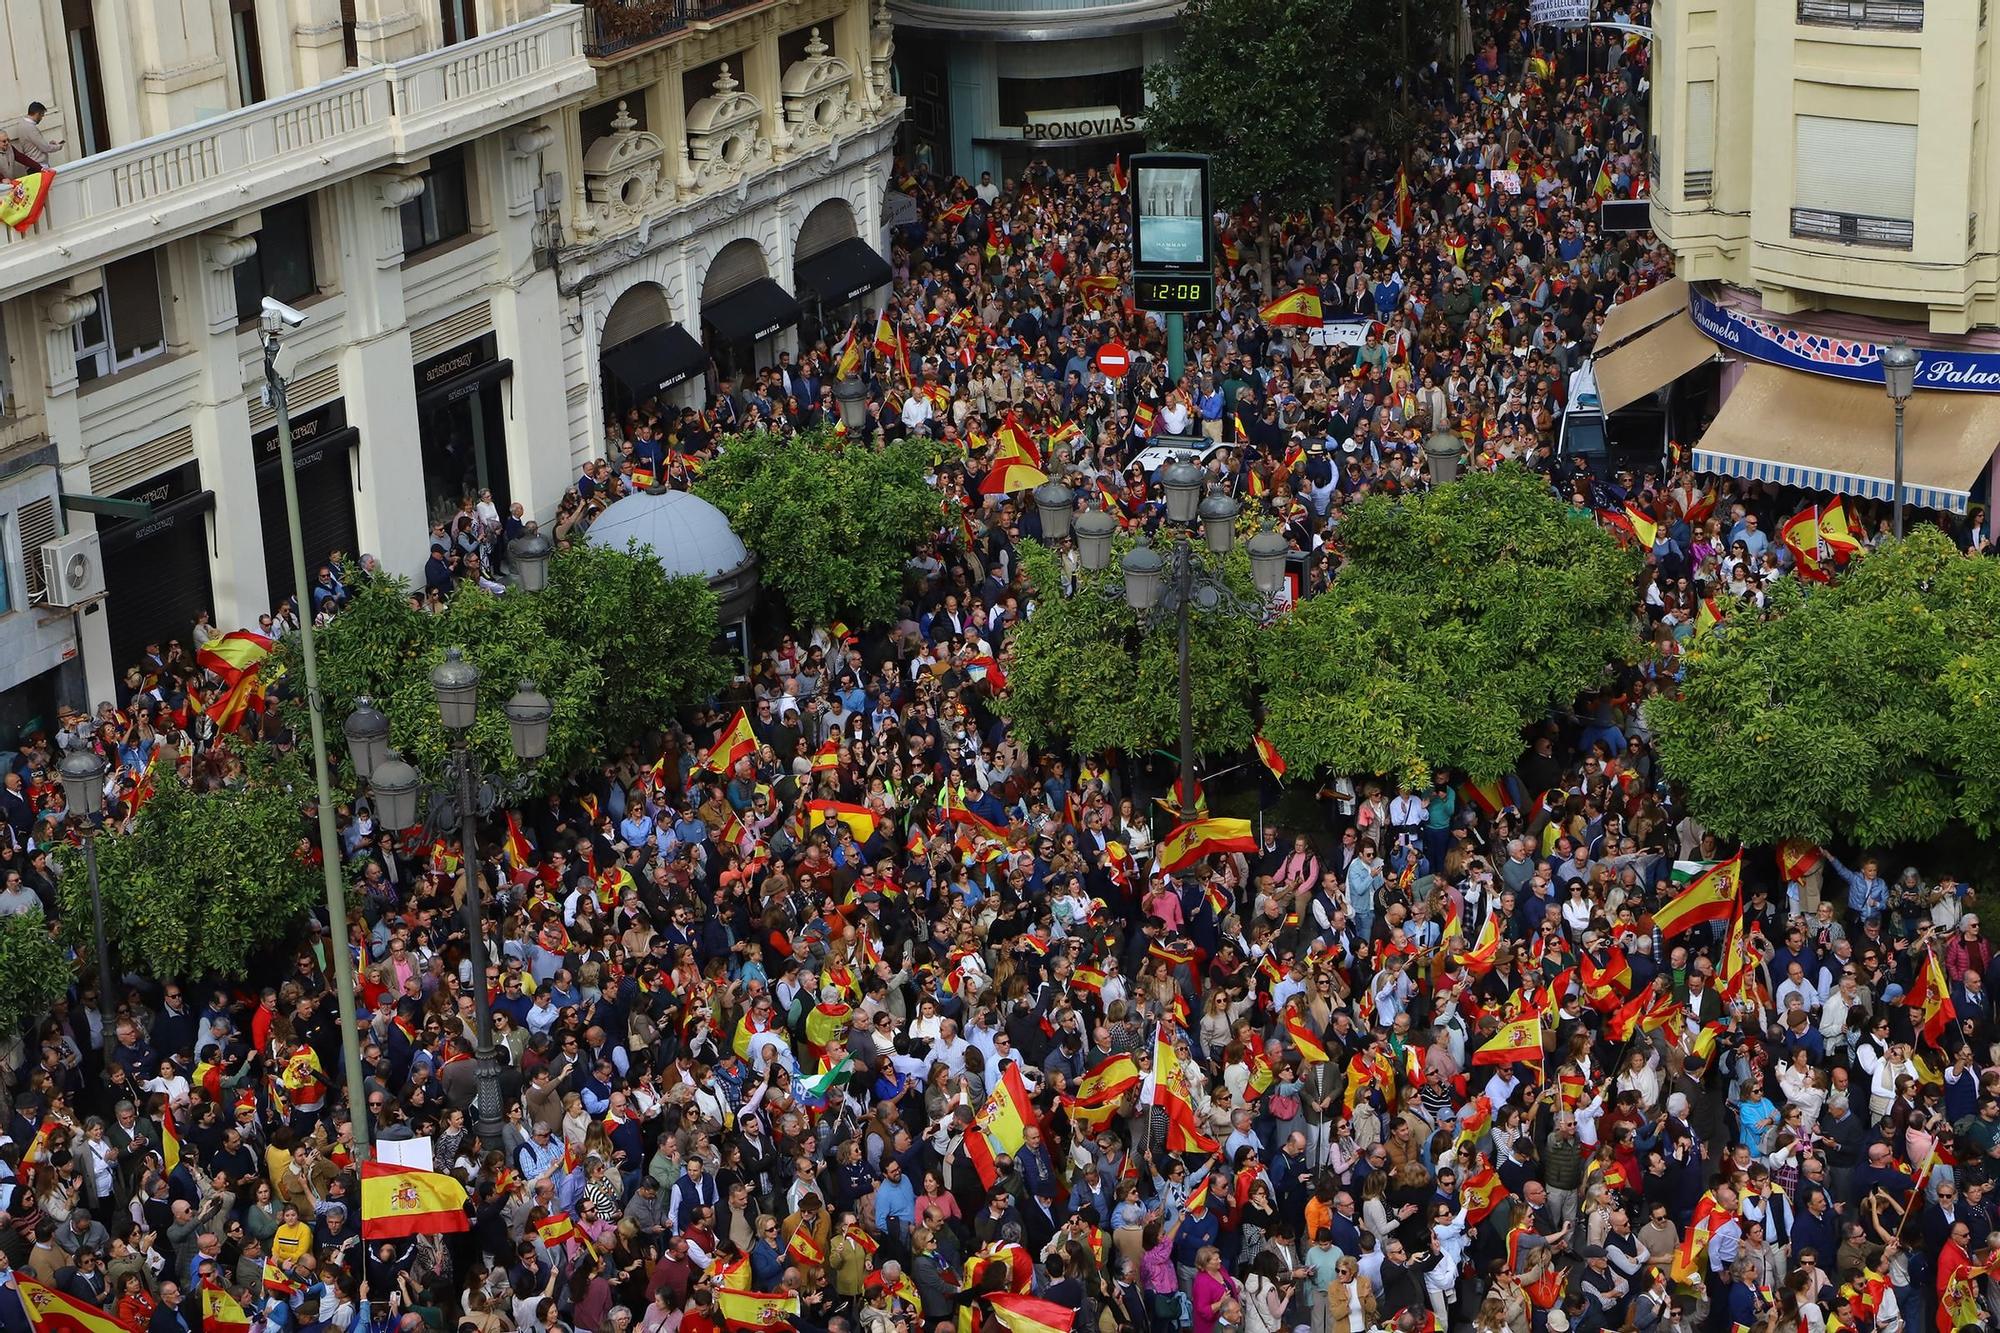 El PP de Córdoba congrega en Las Tendillas a miles de personas contra la amnistía